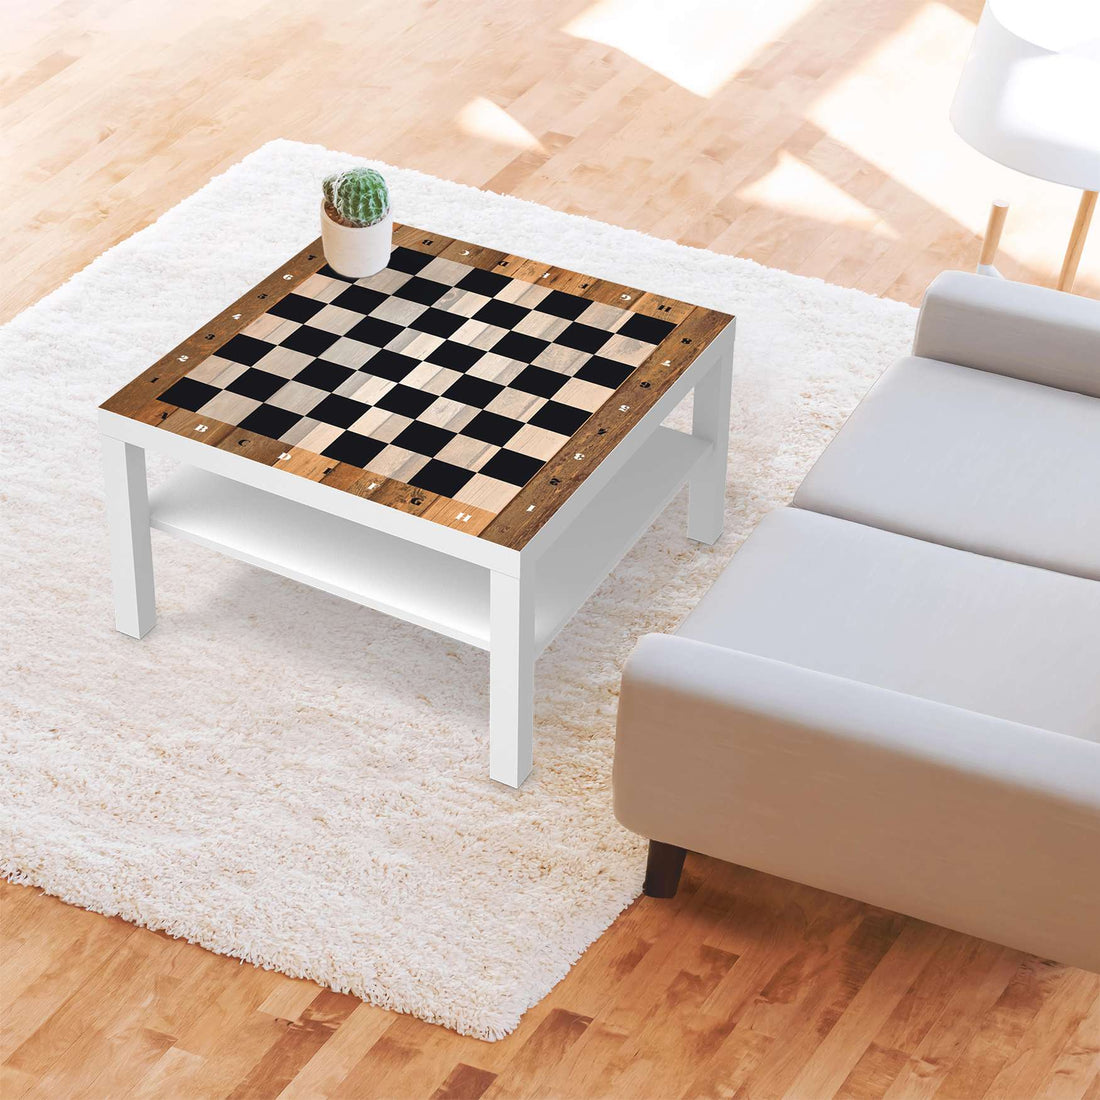 Selbstklebende Folie Spieltisch Schach - IKEA Lack Tisch 78x78 cm - Wohnzimmer